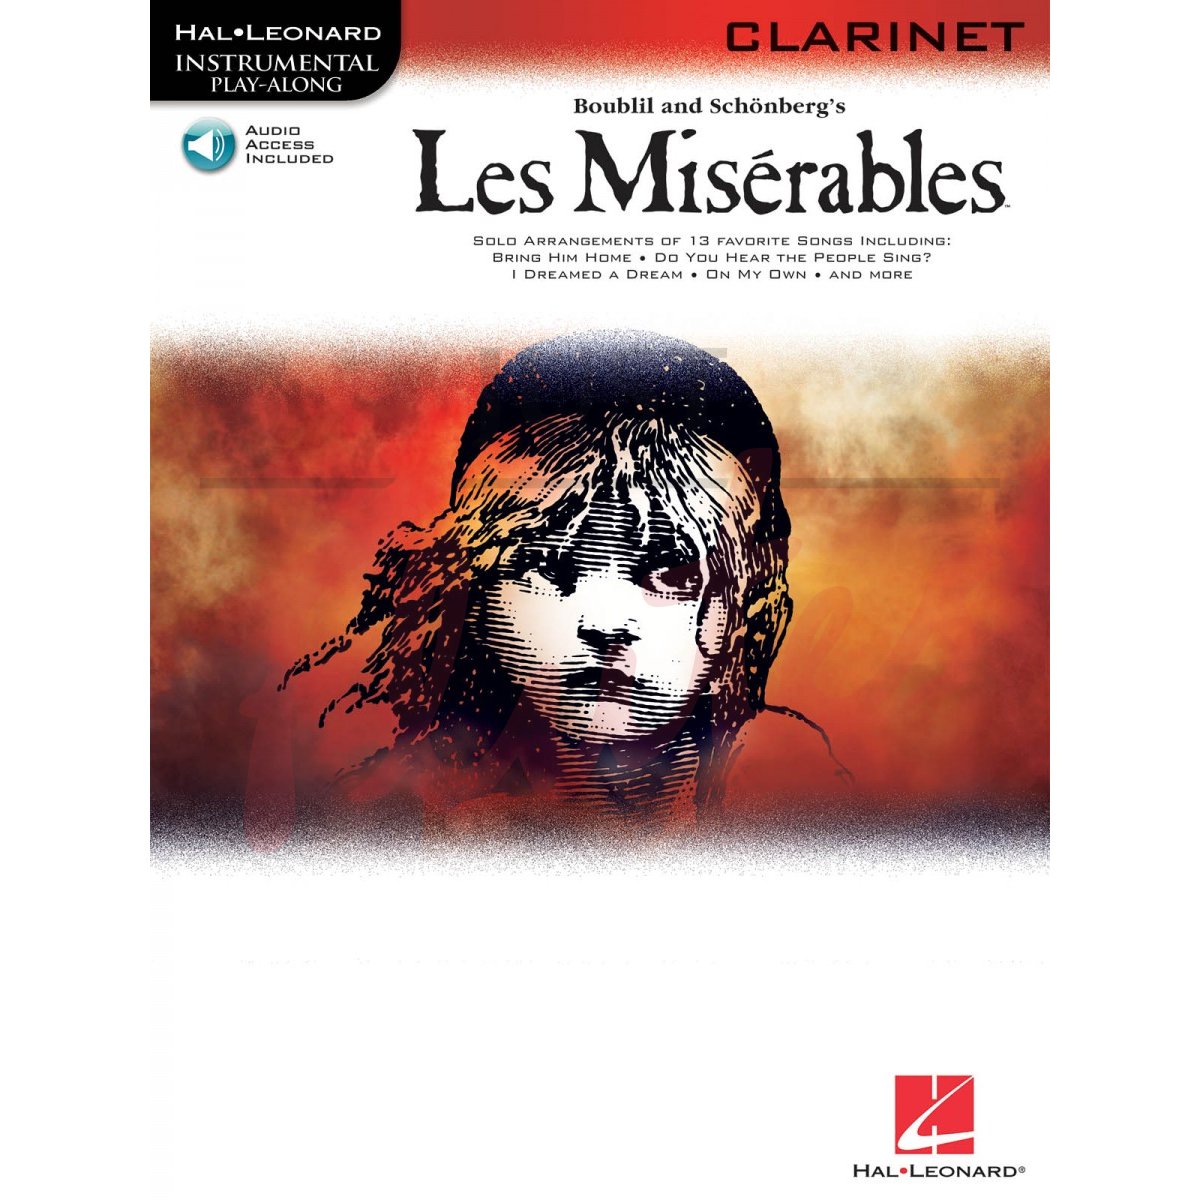 Les Misérables [Clarinet]